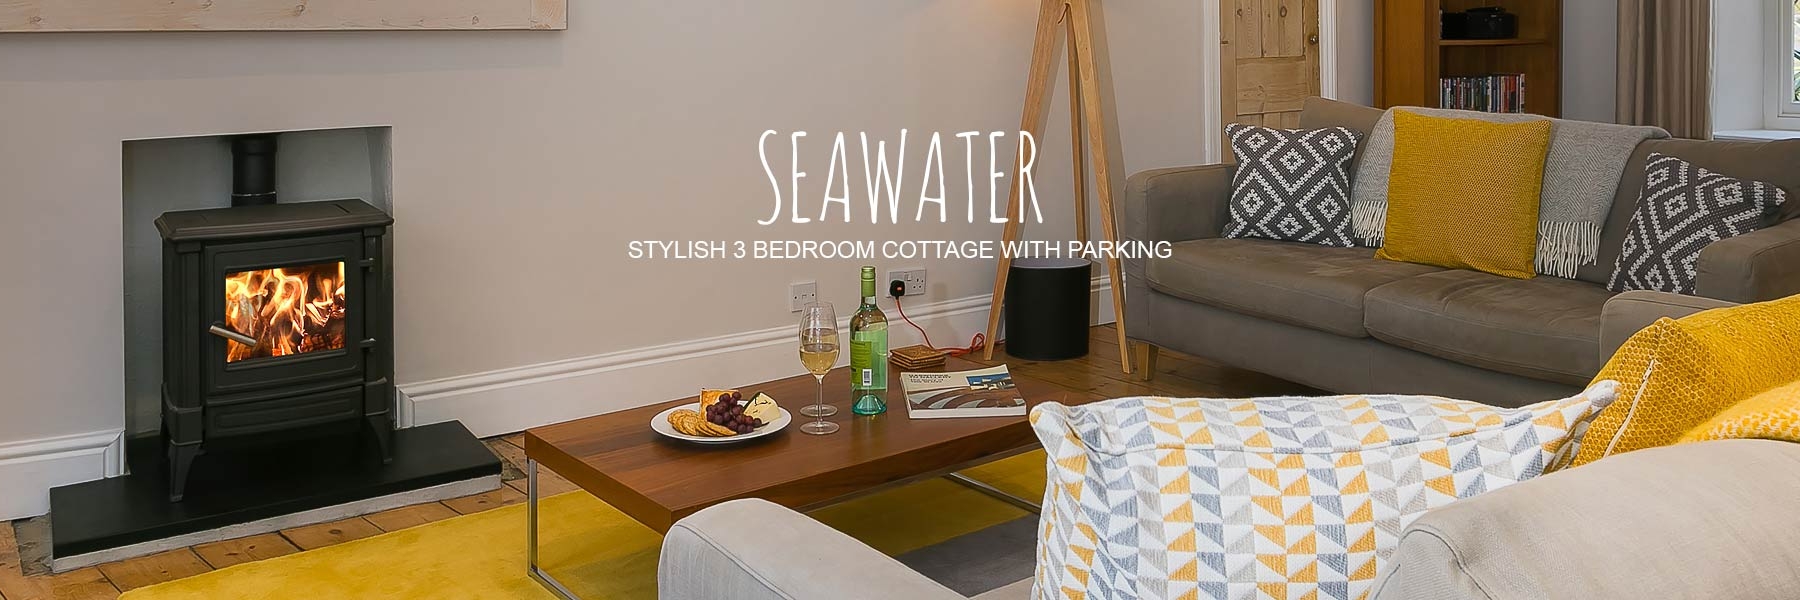 sostives-seawater-cottage-st-ives